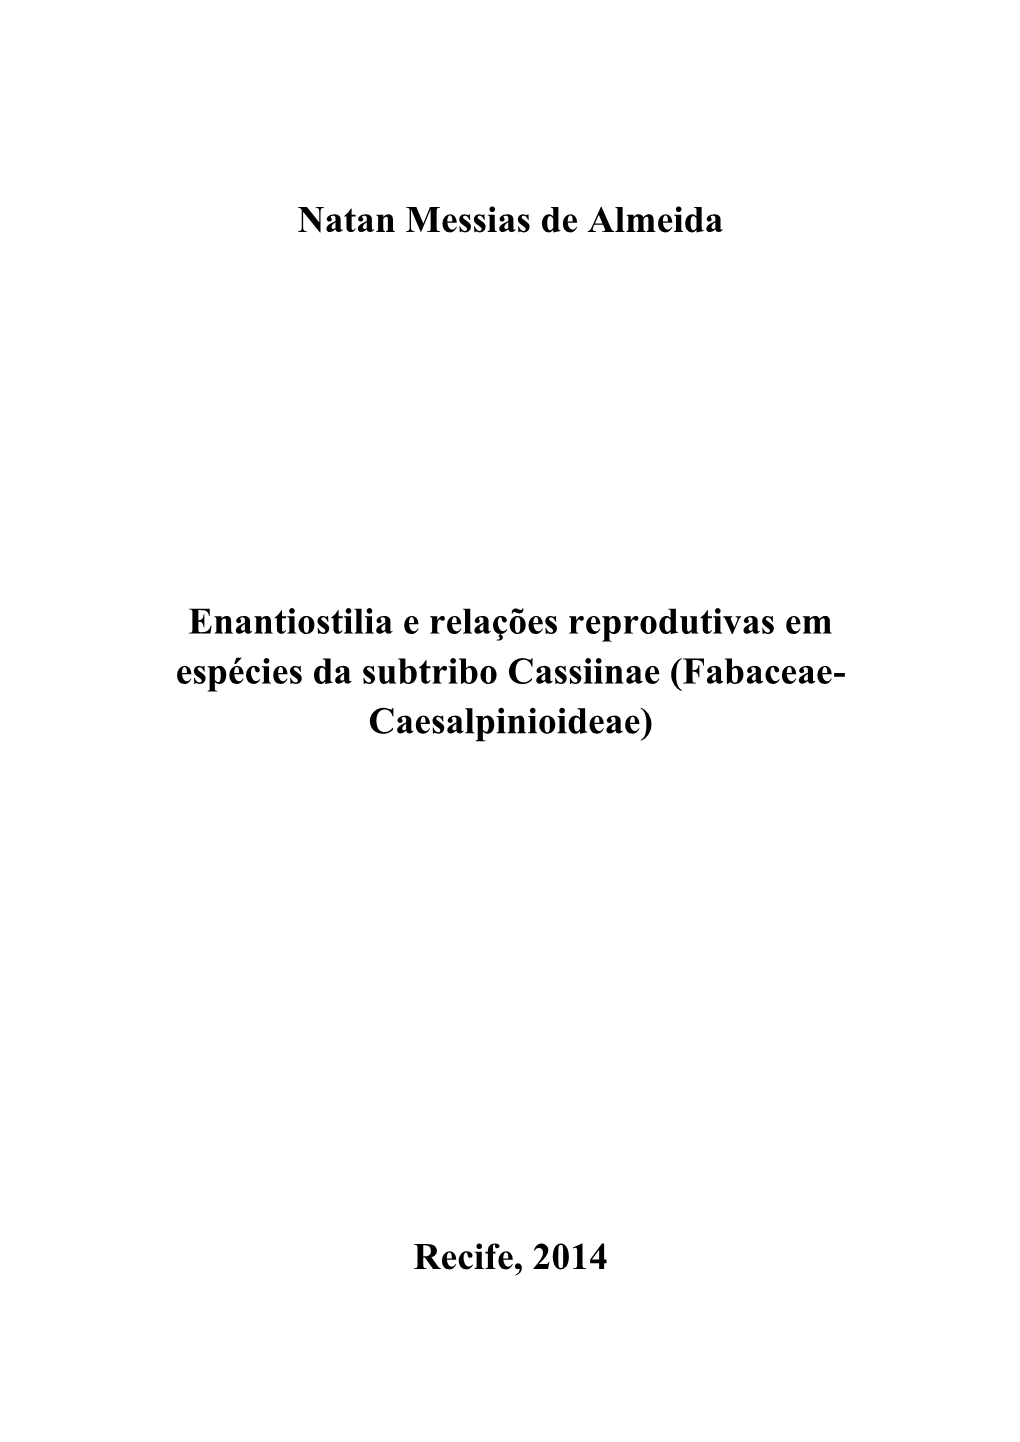 Enantiostilia E Relações Reprodutivas Em Espécies Da Subtribo Cassiinae (Fabaceae- Caesalpinioideae)